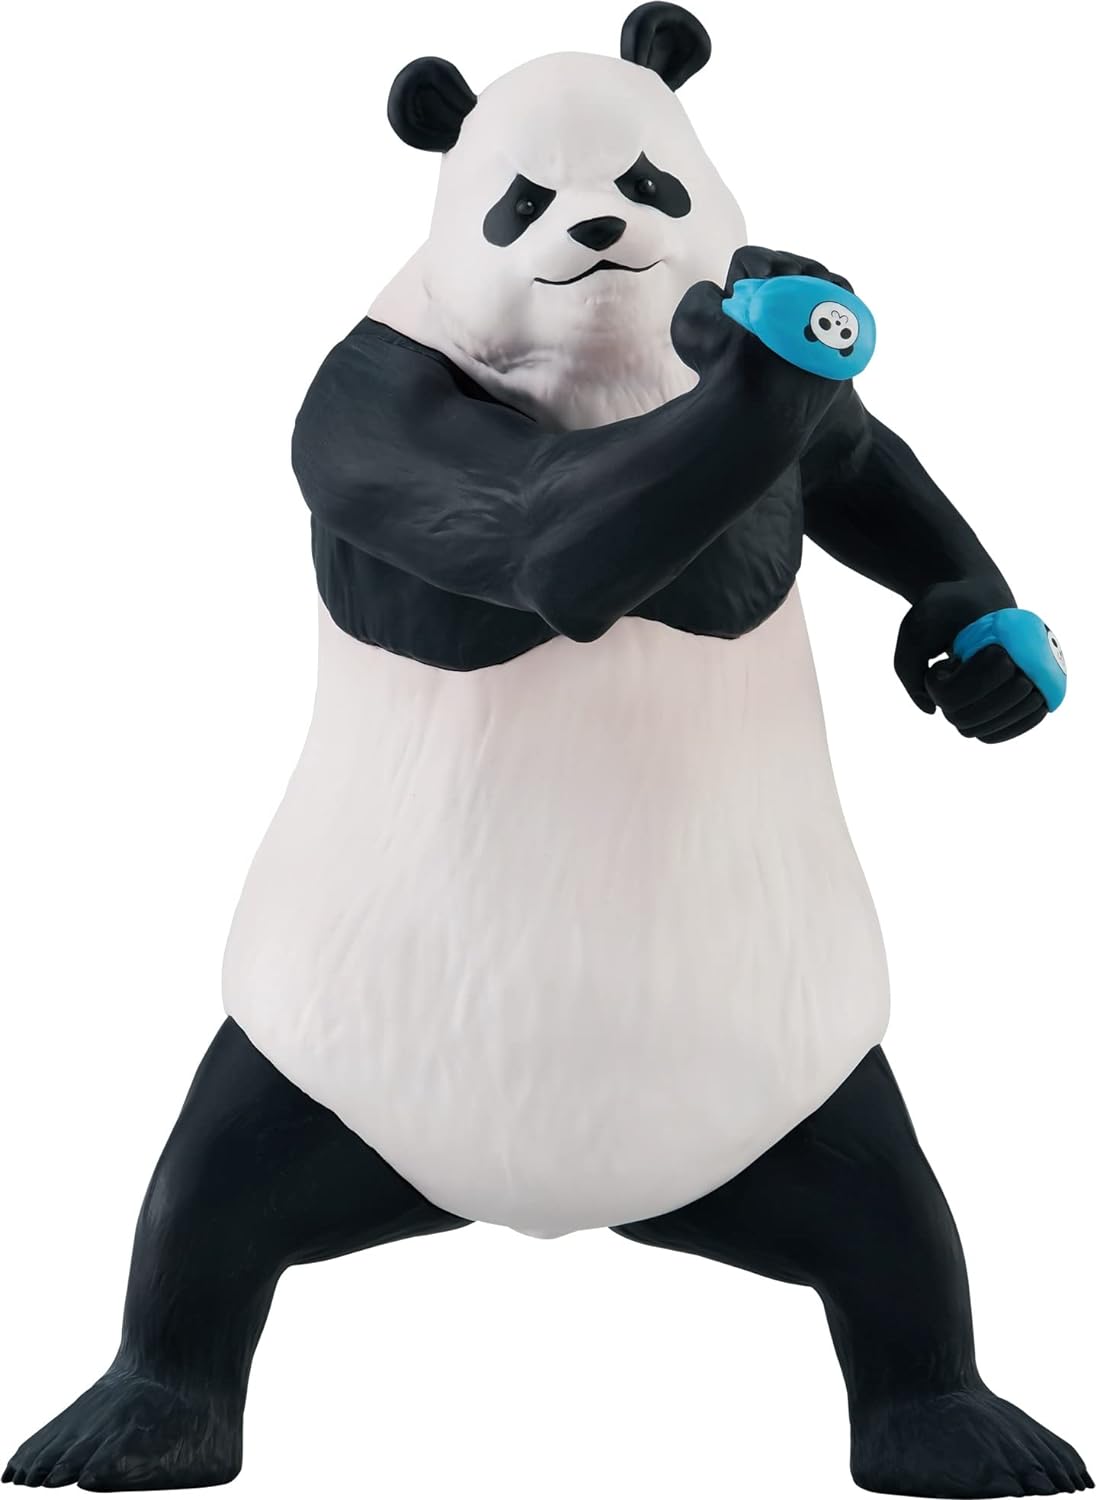 Panda Figure, Jujutsu Kaisen, Banpresto